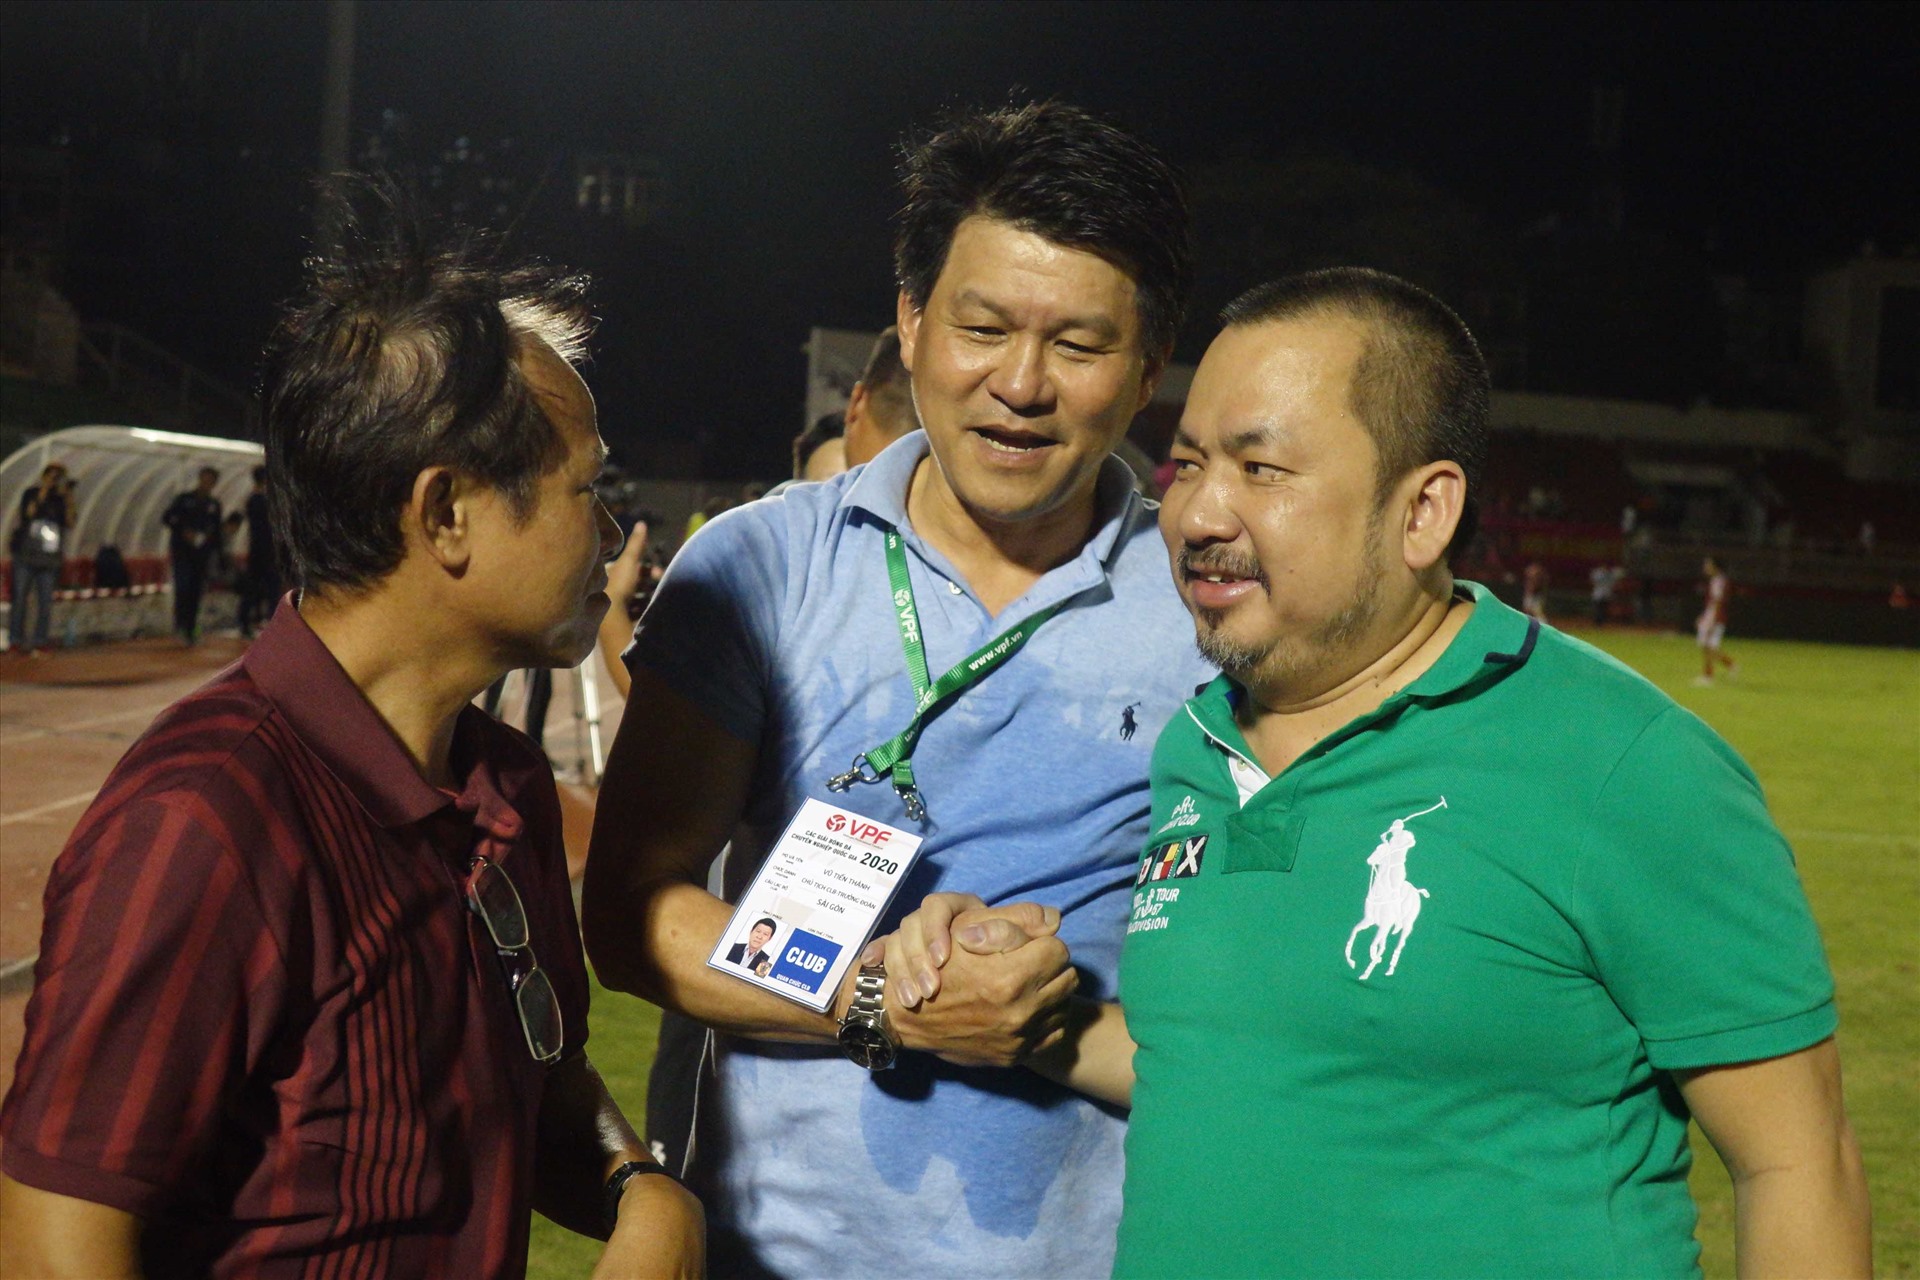 Ông Vũ Tiến Thành (giữa) tham mưu cho lãnh đạo mua câu lạc bộ Sài Gòn, và chính ông là người dẫn dắt đội ở giai đoạn đầu V.League 2020. Ảnh: Nguyễn Đăng.